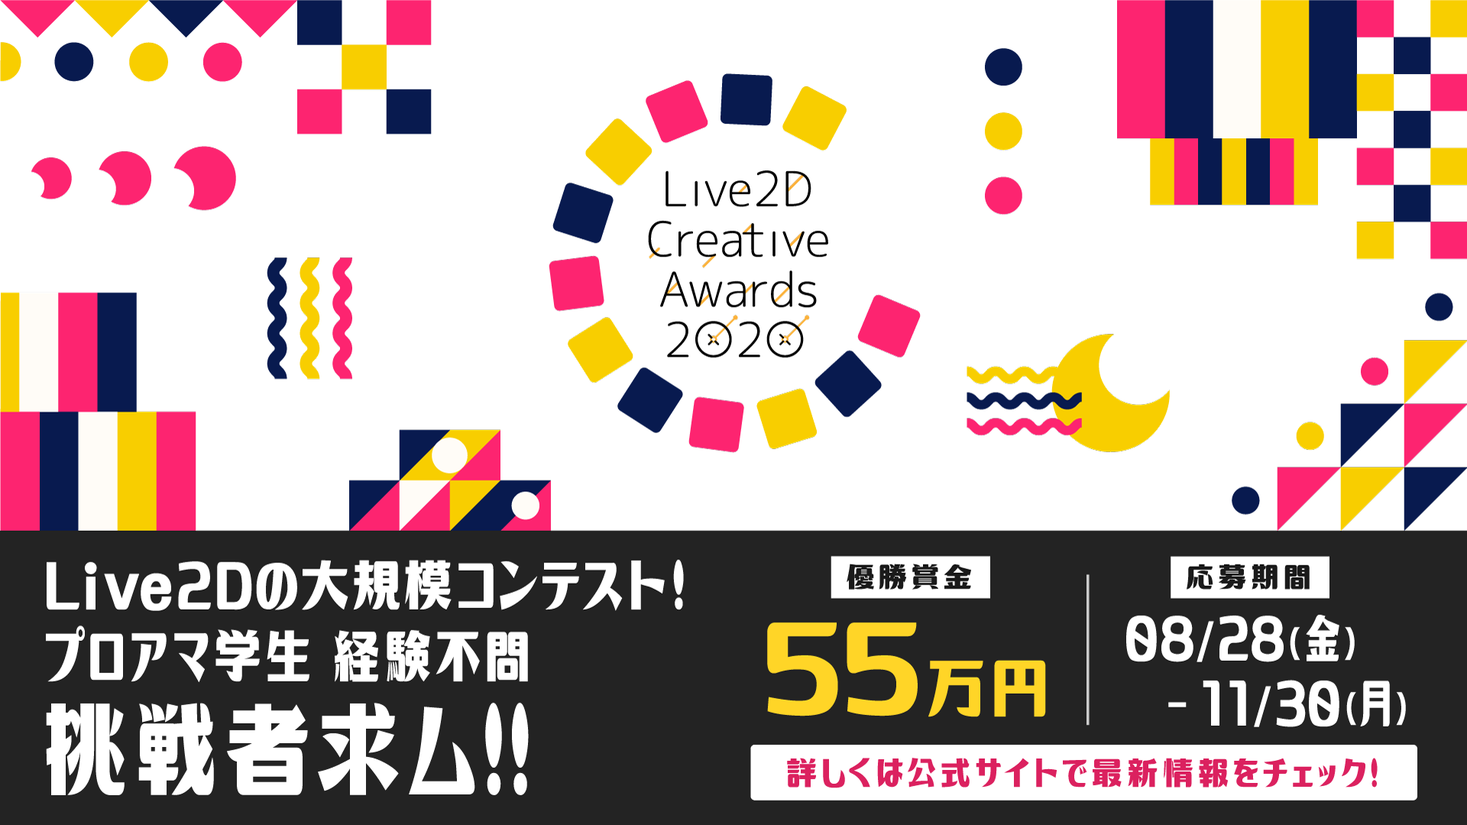 最優秀賞は賞金55万円 Live2dの大規模コンテスト Live2d Creative Awards 開催 株式会社live2dのプレスリリース